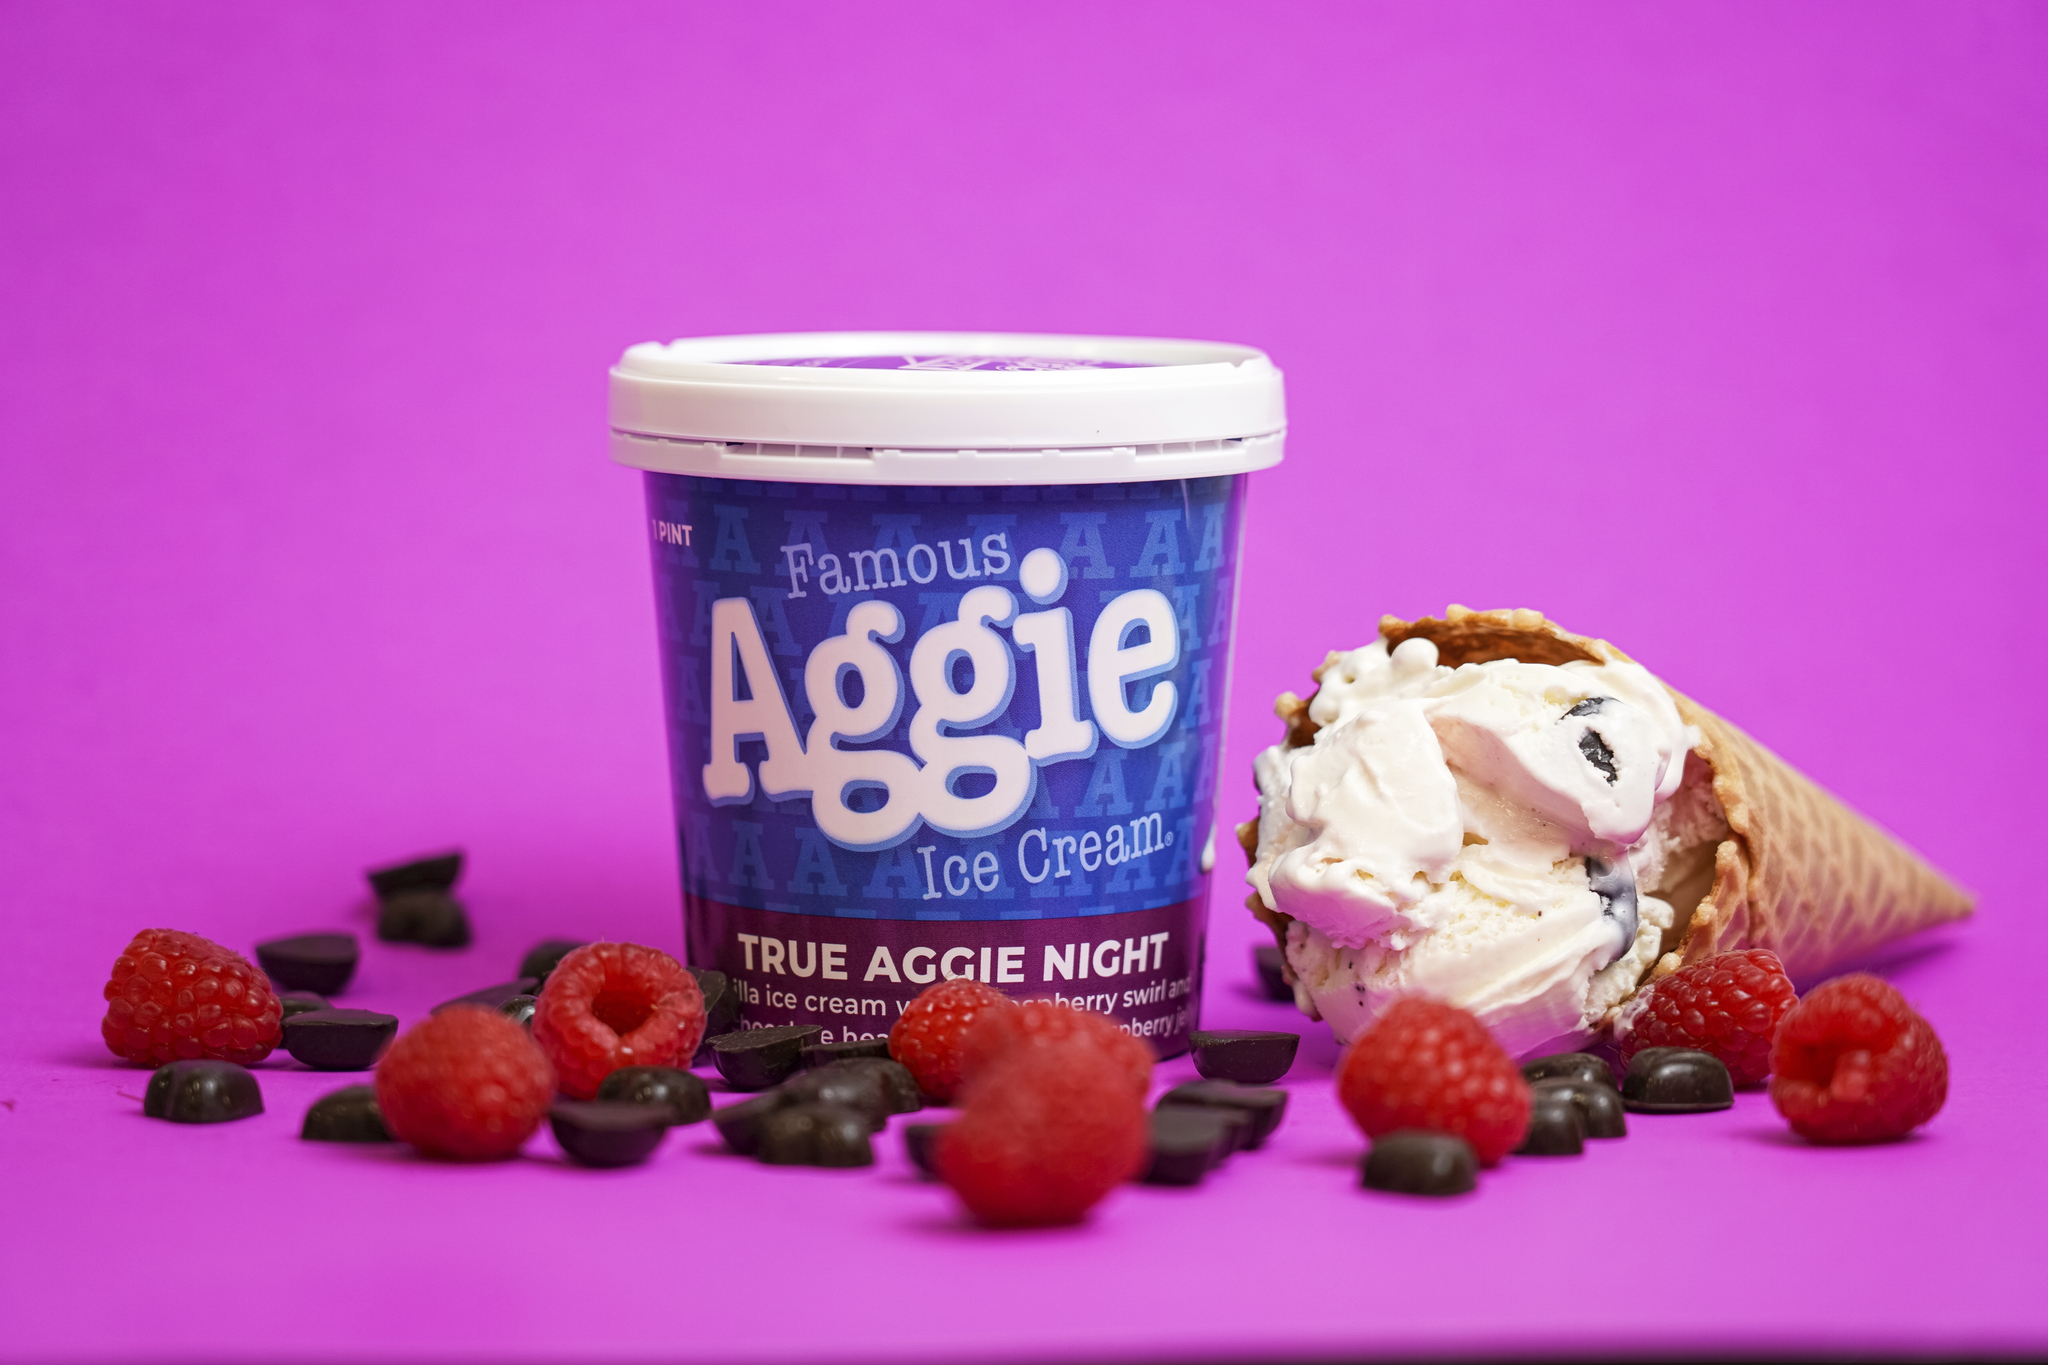 True Aggie Night Ice Cream